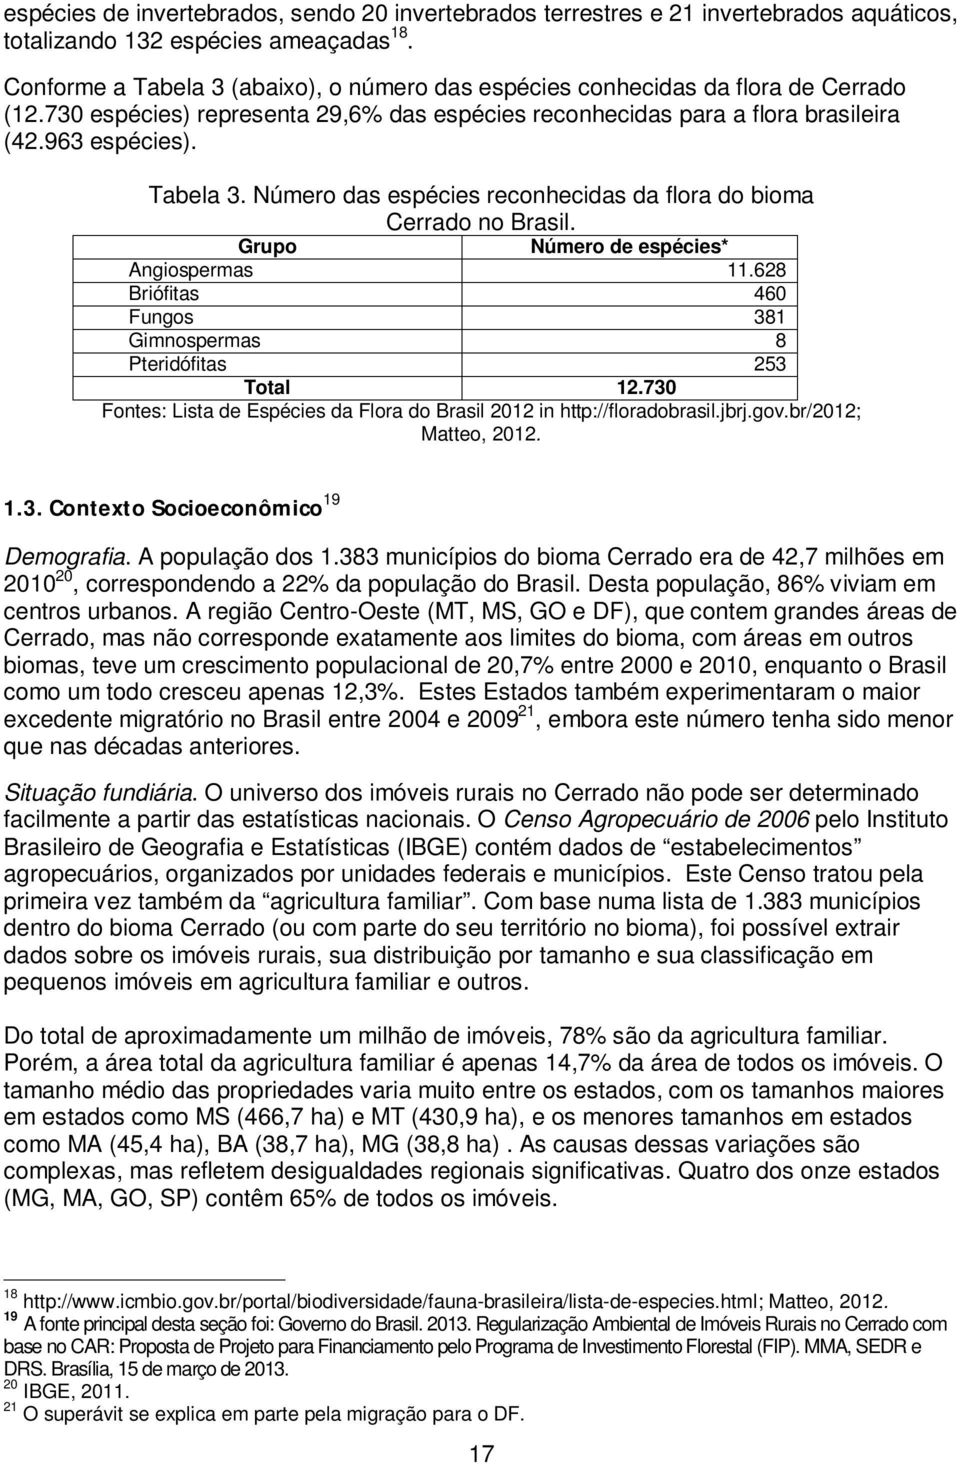 Grupo Número de espécies* Angiospermas 11.628 Briófitas 460 Fungos 381 Gimnospermas 8 Pteridófitas 253 Total 12.730 Fontes: Lista de Espécies da Flora do Brasil 2012 in http://floradobrasil.jbrj.gov.